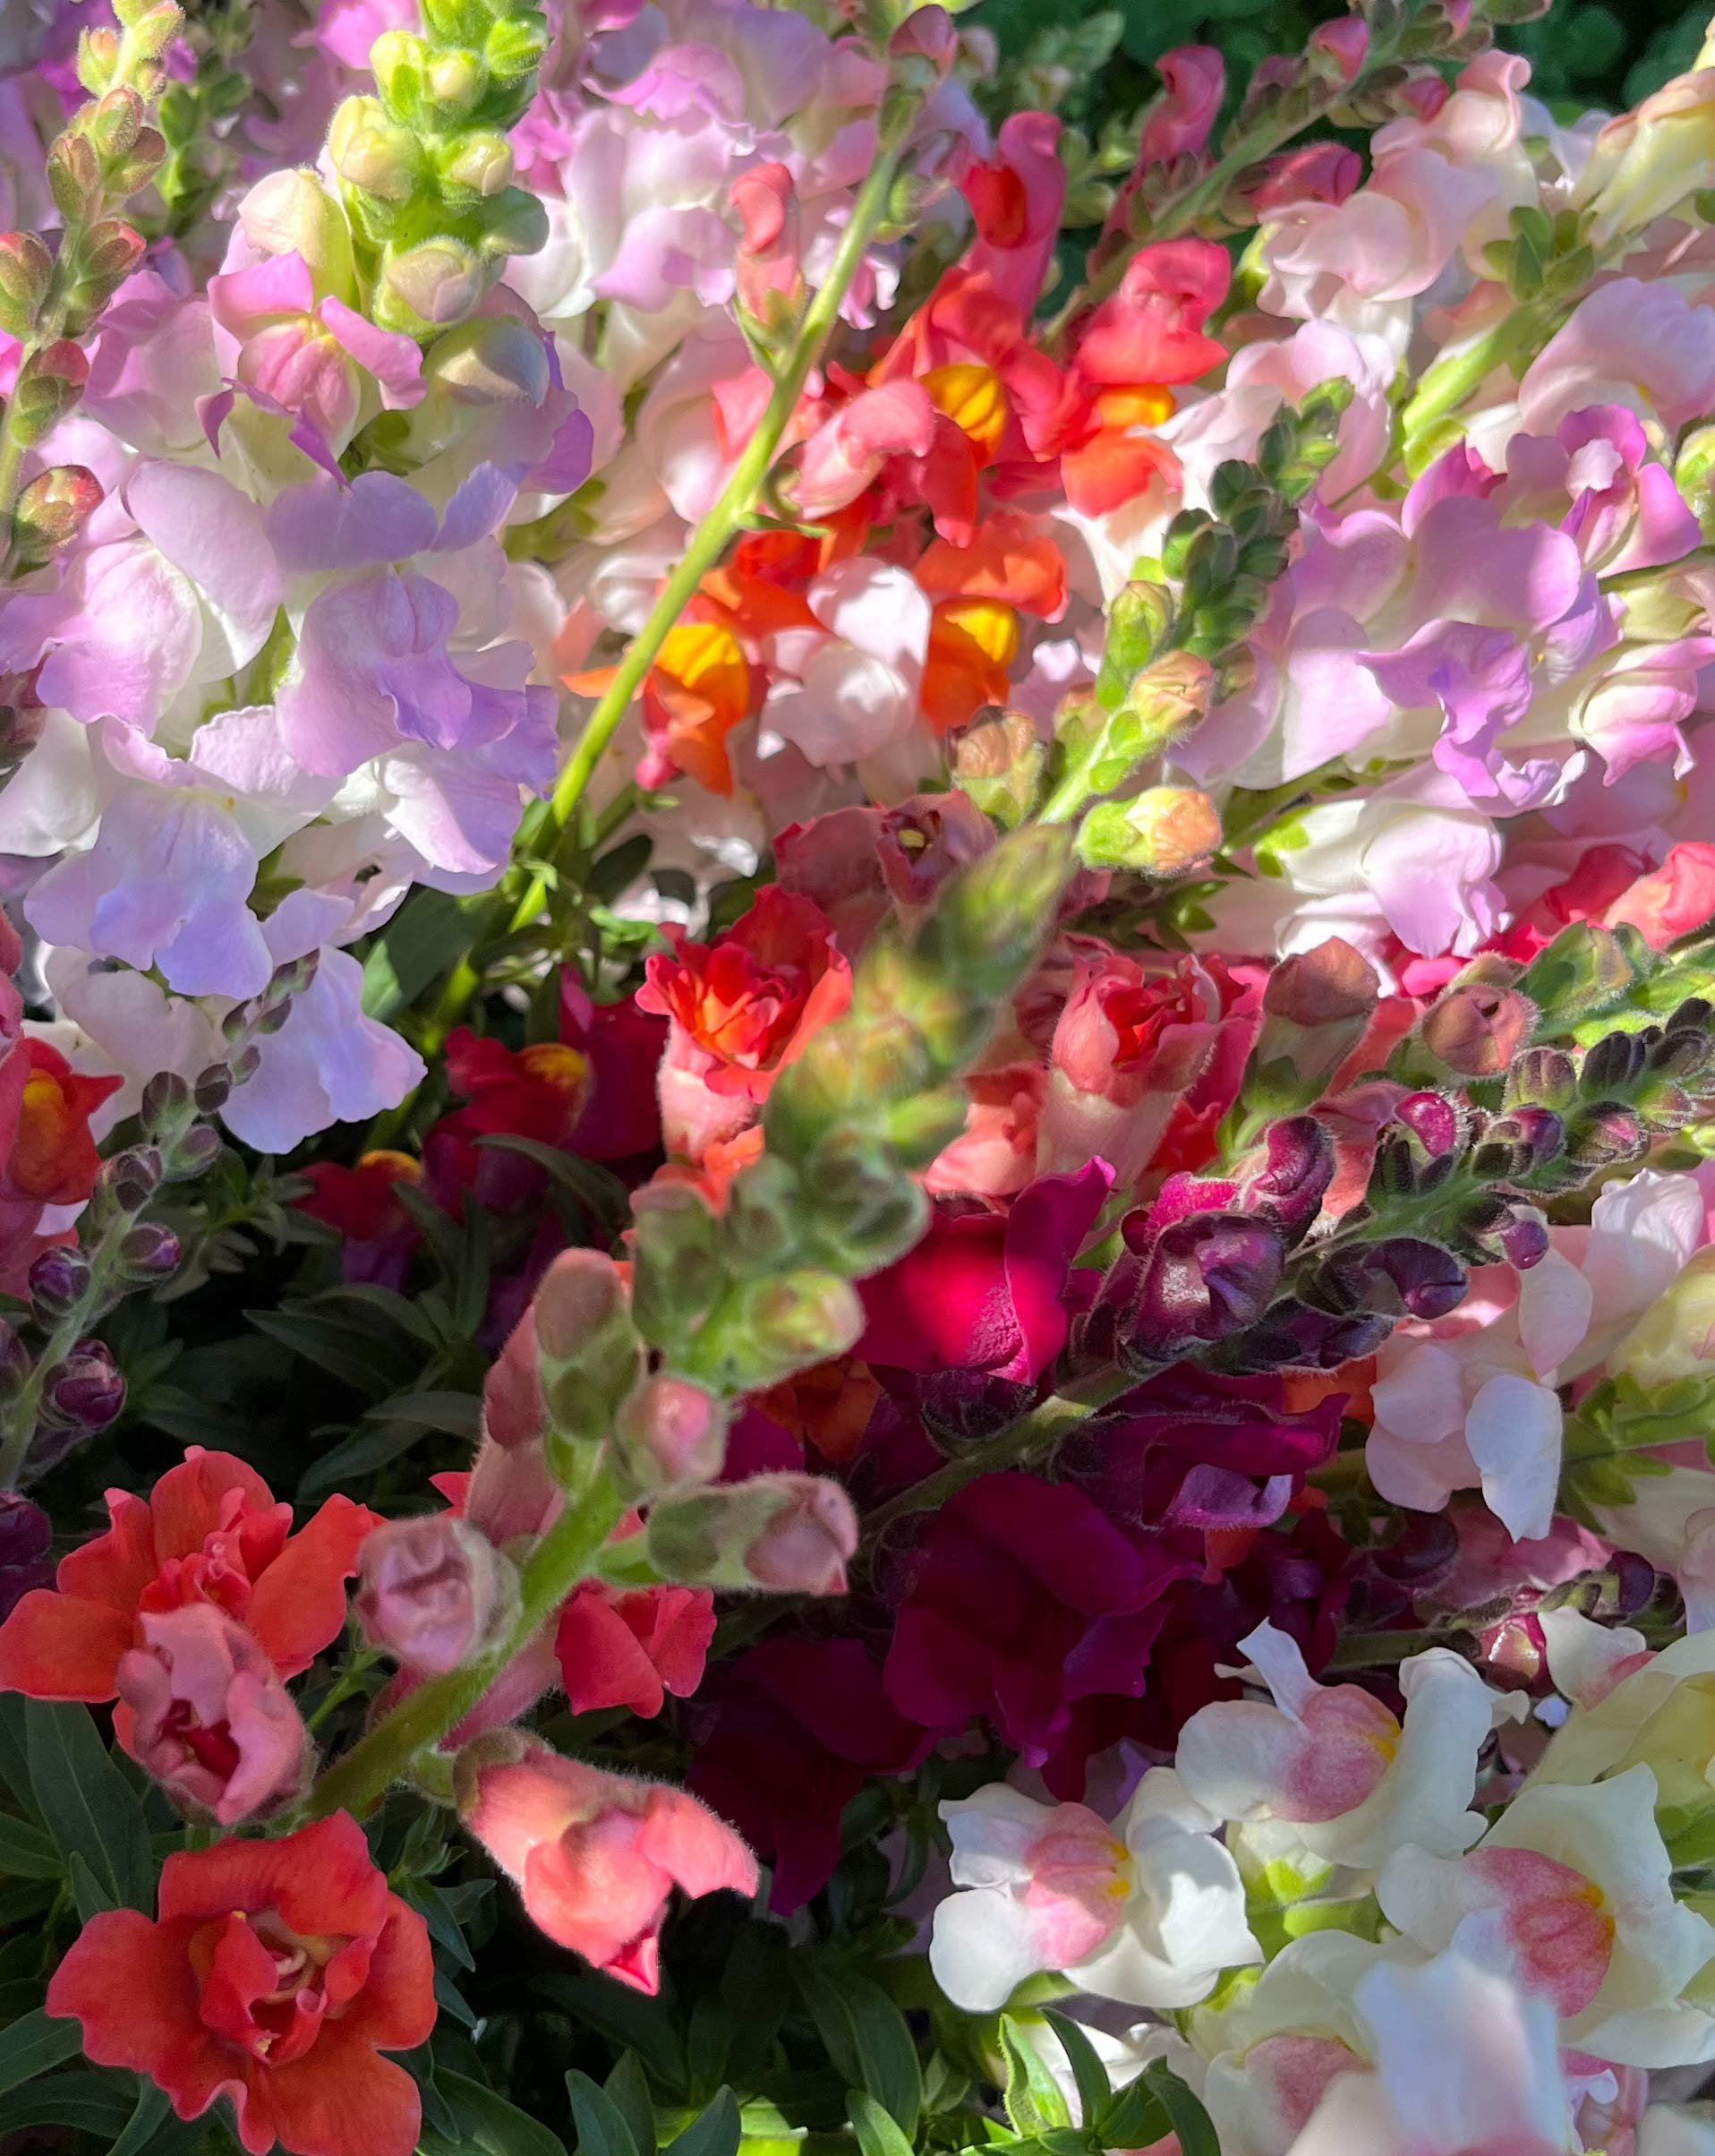 Snapdragon_maui_flowers.jpg